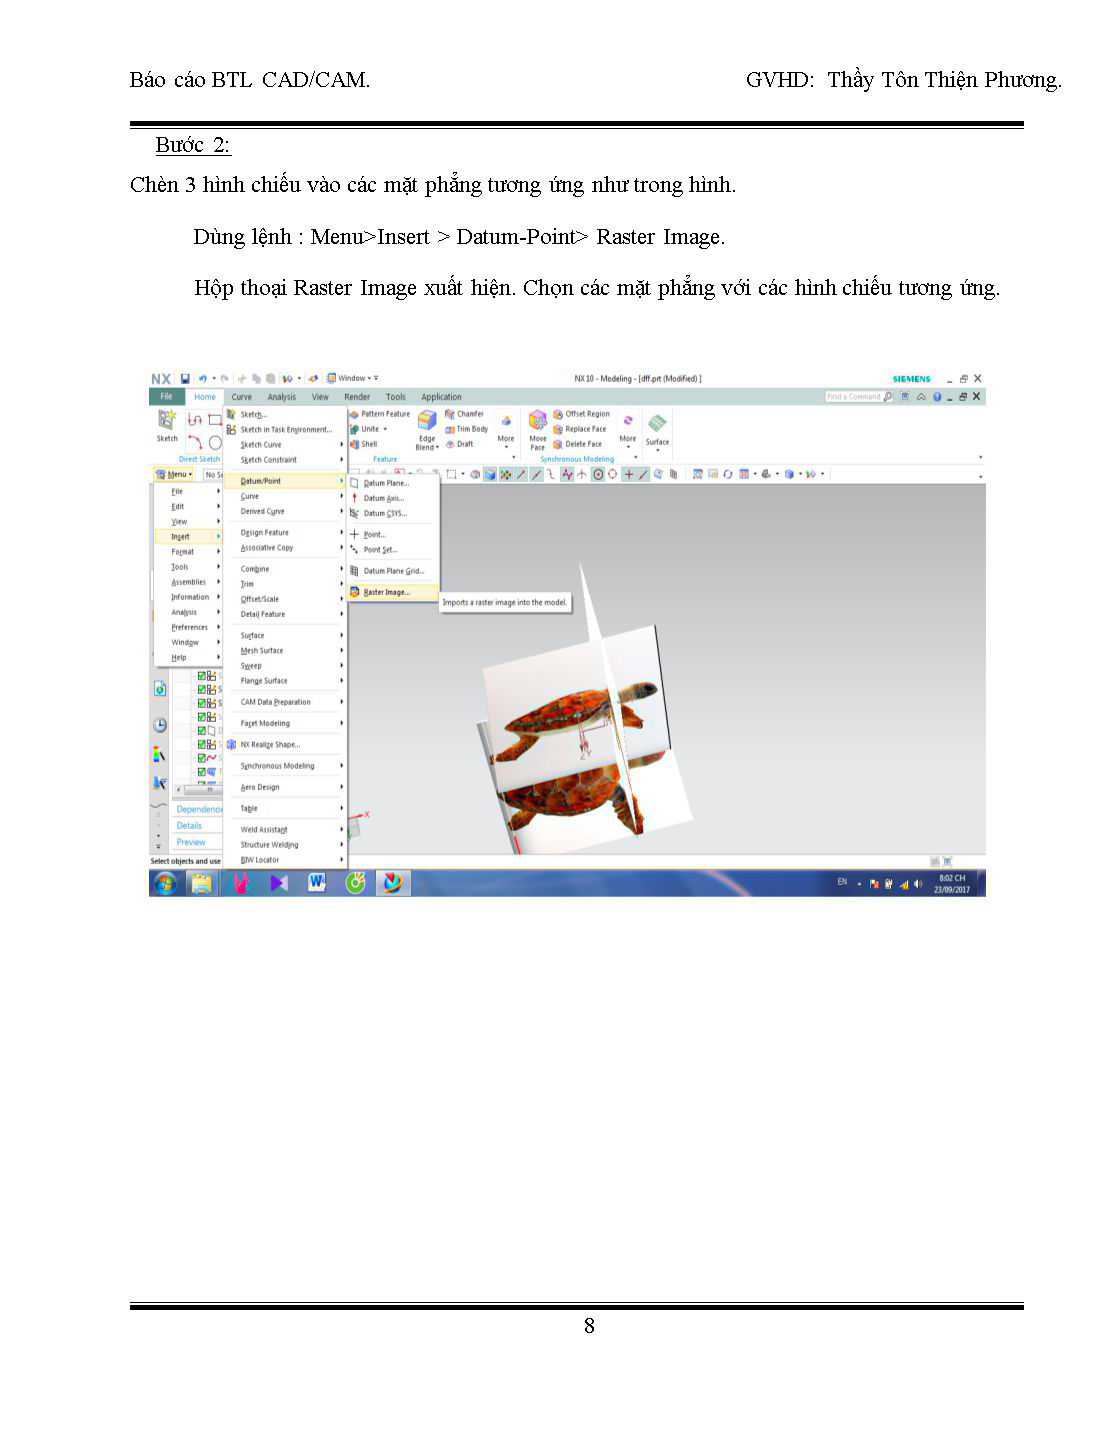 Báo cáo bài tập lớn CAD/CAM - Đề bài: Gia công Con Rùa 3D trên NX 11 trang 8